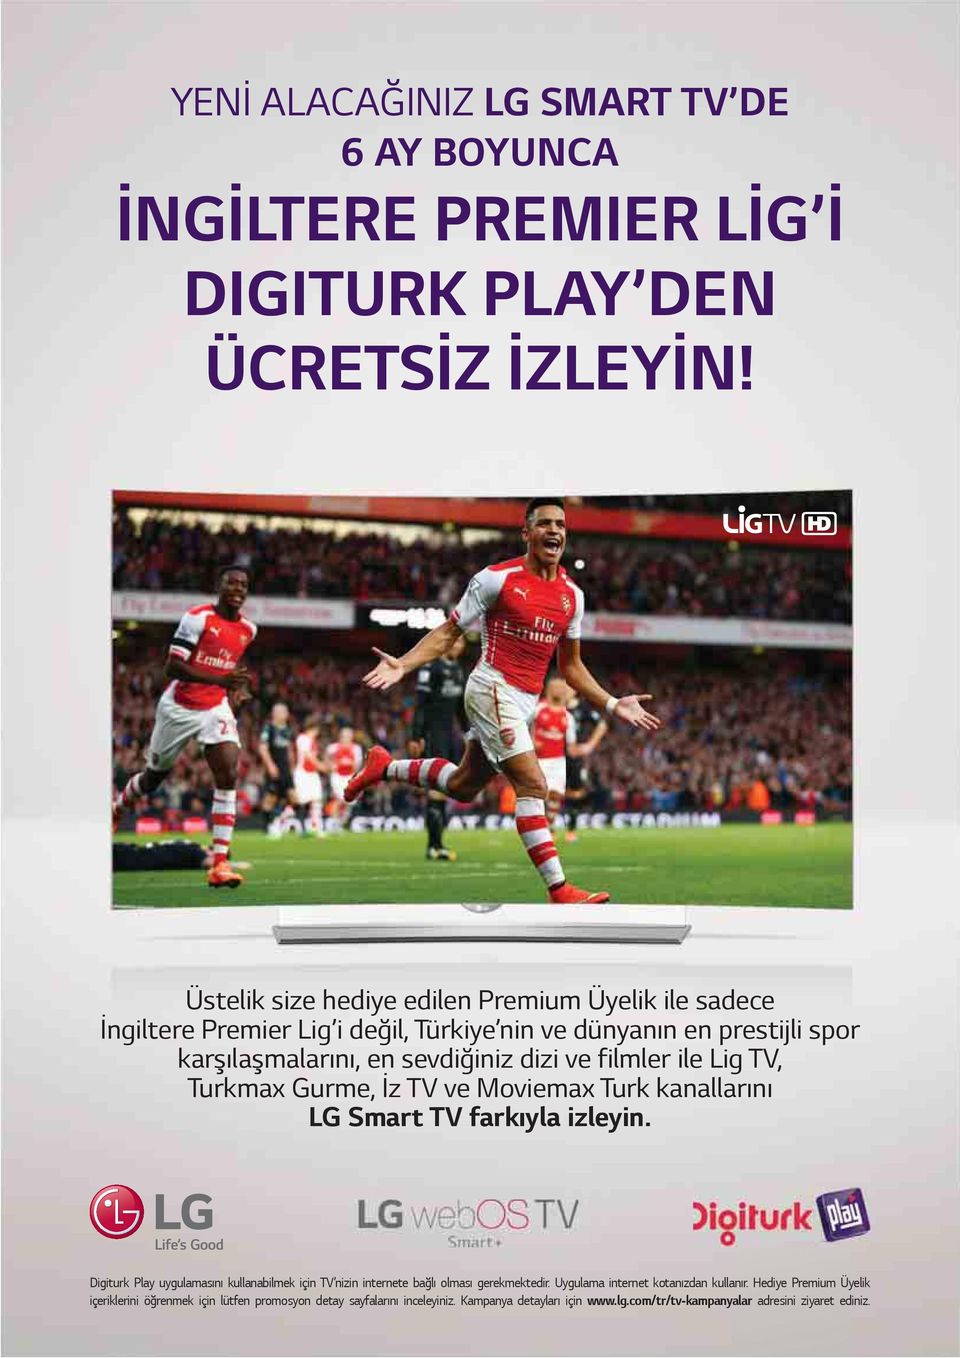 filmler ile Lig TV, Turkmax Gurme, İz TV ve Moviemax Turk kanallarını LG Smart TV farkıyla izleyin.